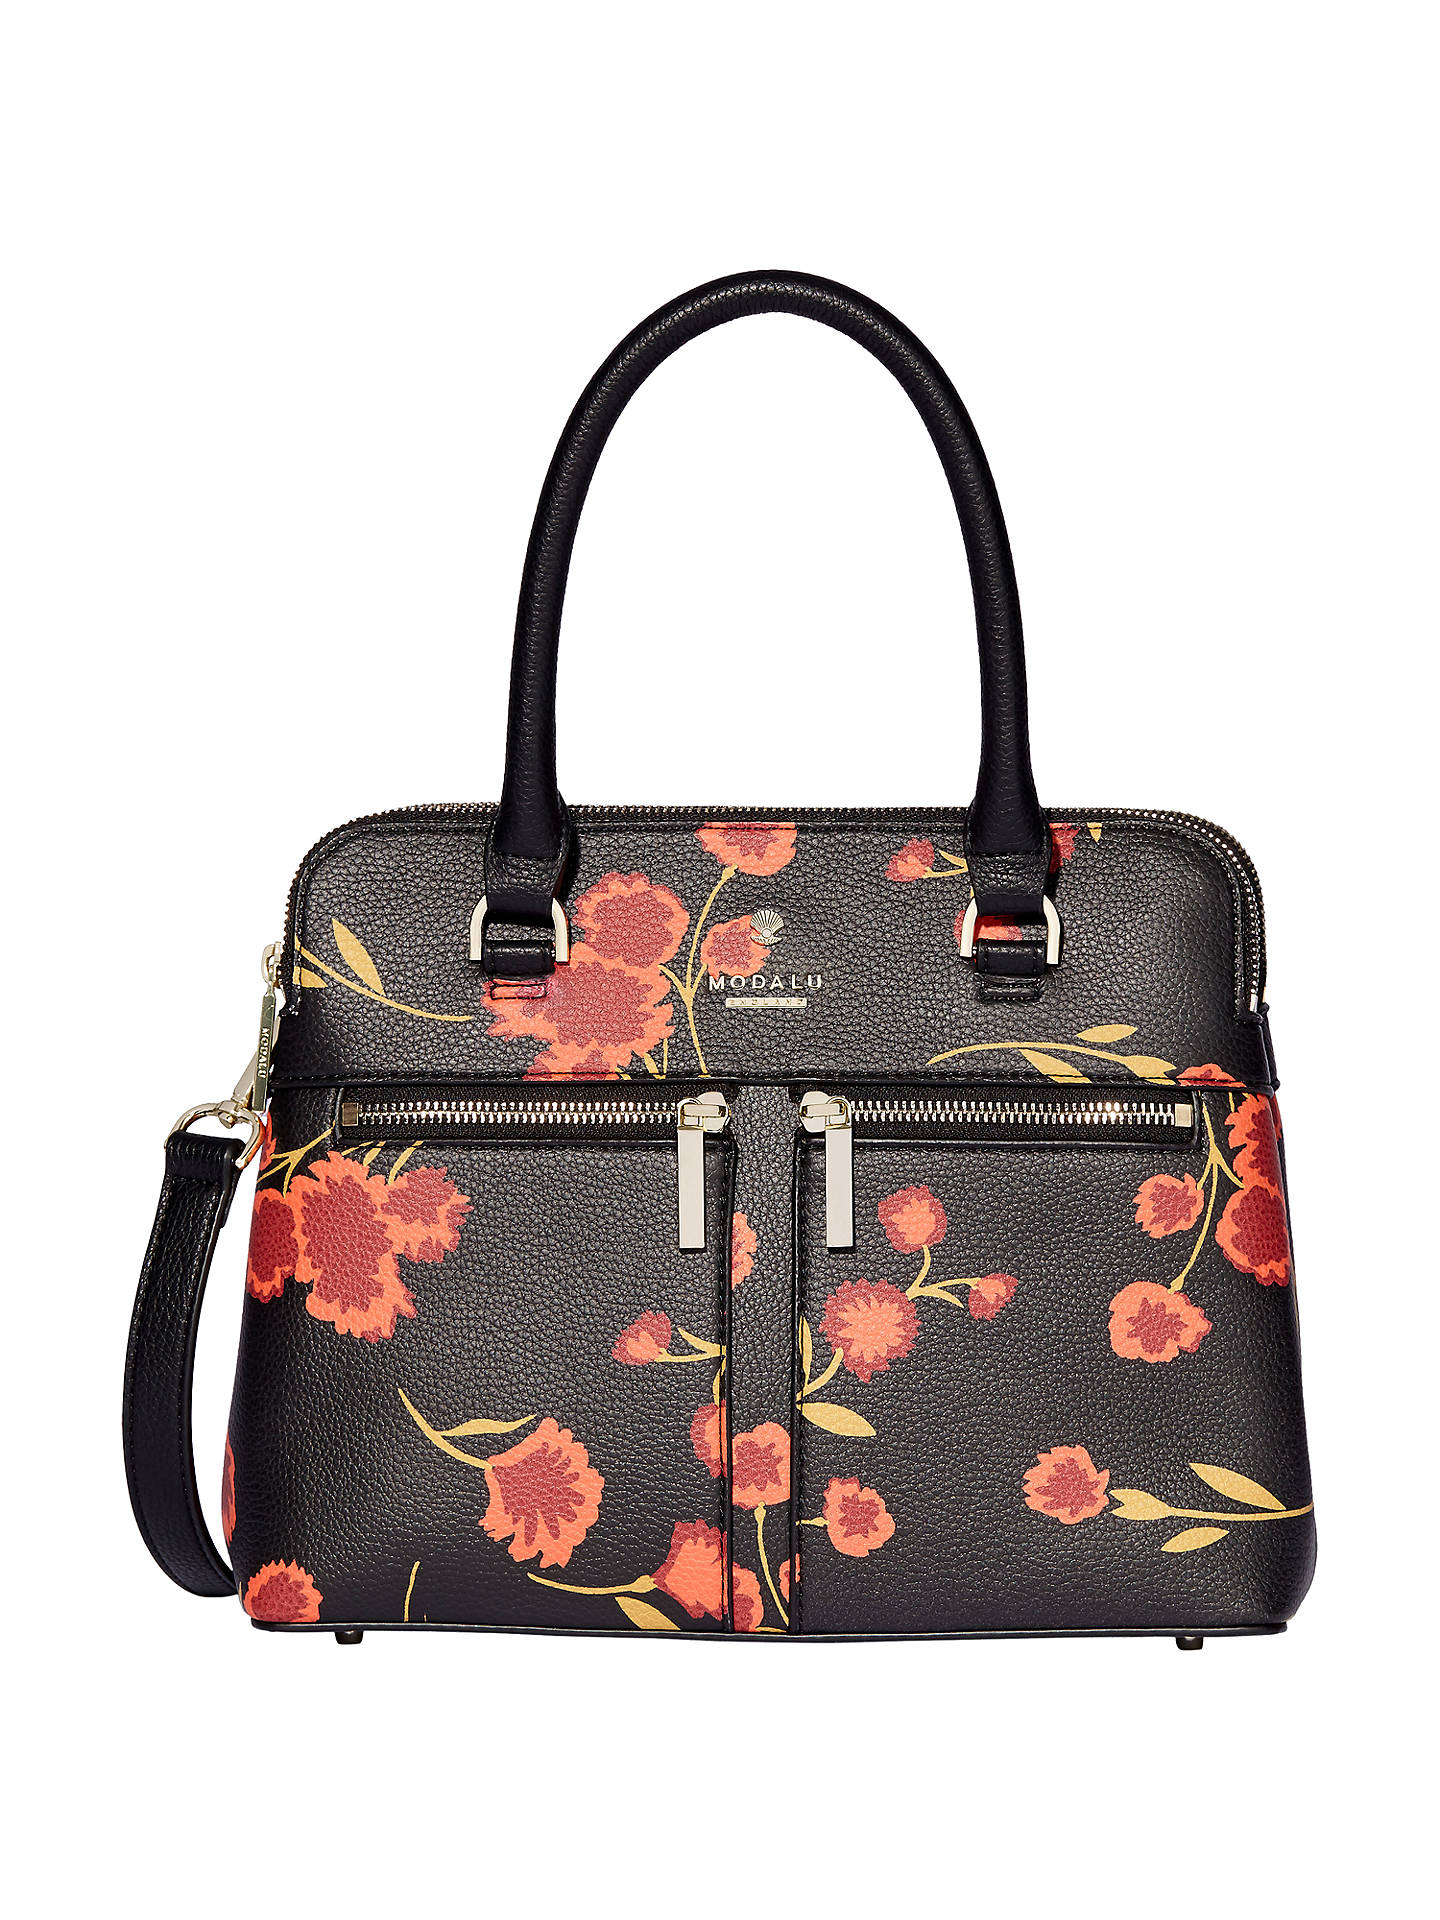 Modalu Pippa Classic Mini Grab Bag at John Lewis & Partners